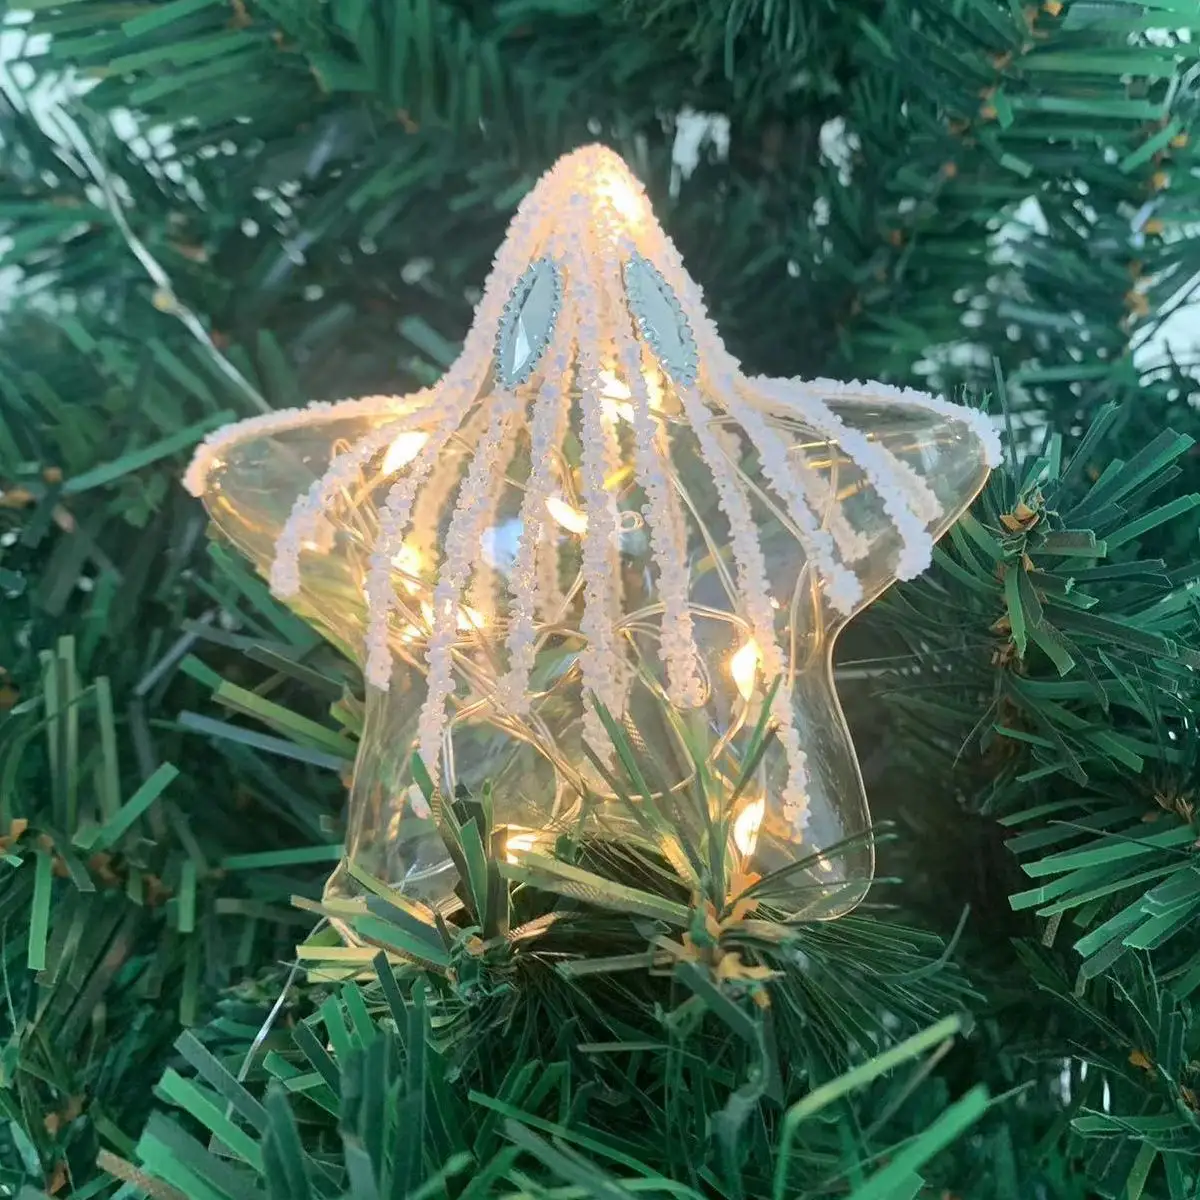 Atacado personalizado 8 cm enfeites decorativos pendurados bolas de vidro de natal de luxo dourado decoração de árvore de natal